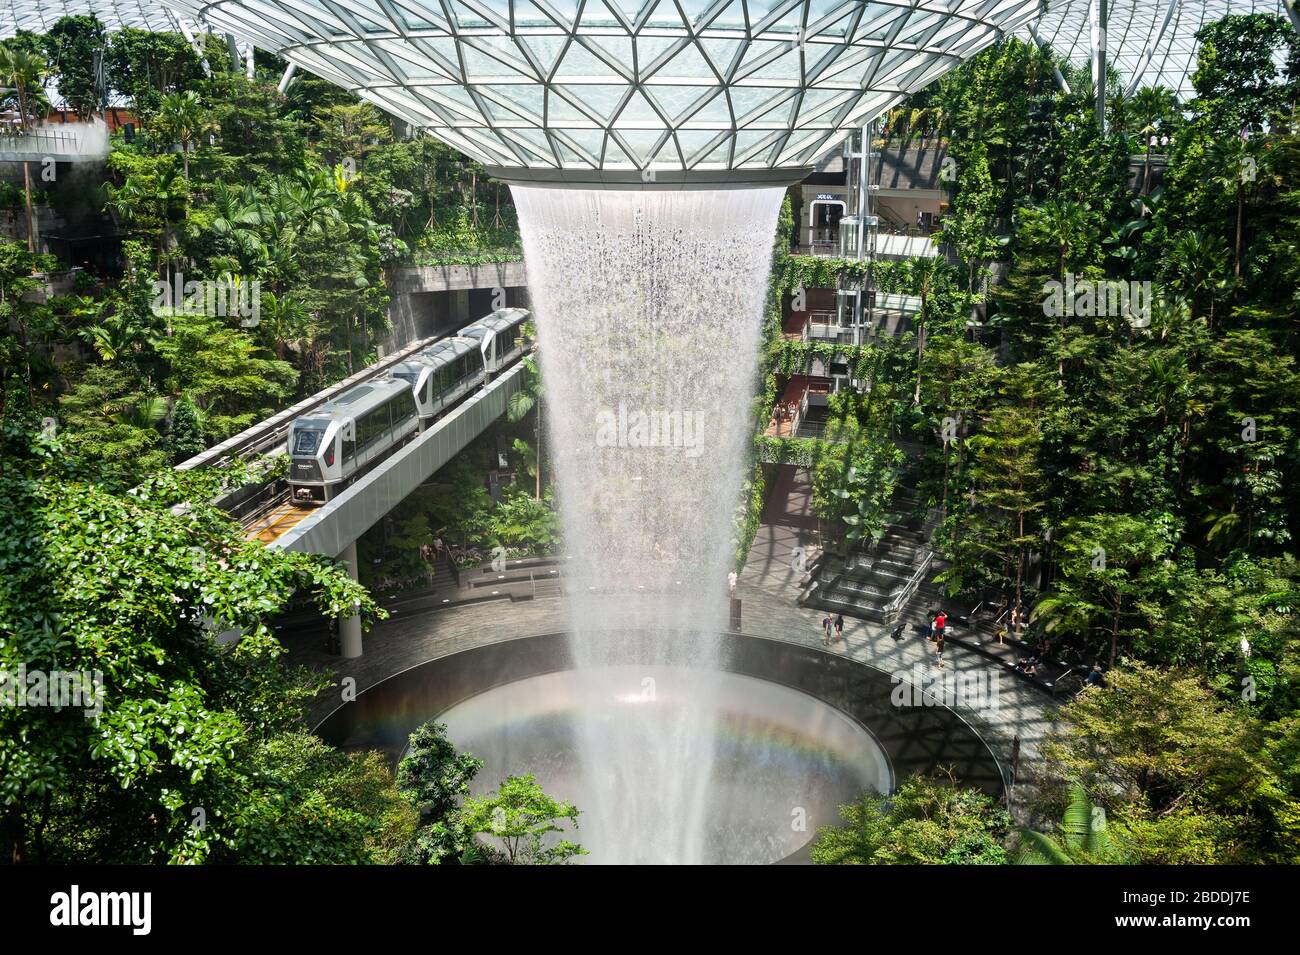 28.03.2020, Singapour, , Singapour - Forest Valley avec cascade de Vortex de pluie HSBC dans le nouveau terminal Jewel de l'aéroport international de Changi. Le desi Banque D'Images